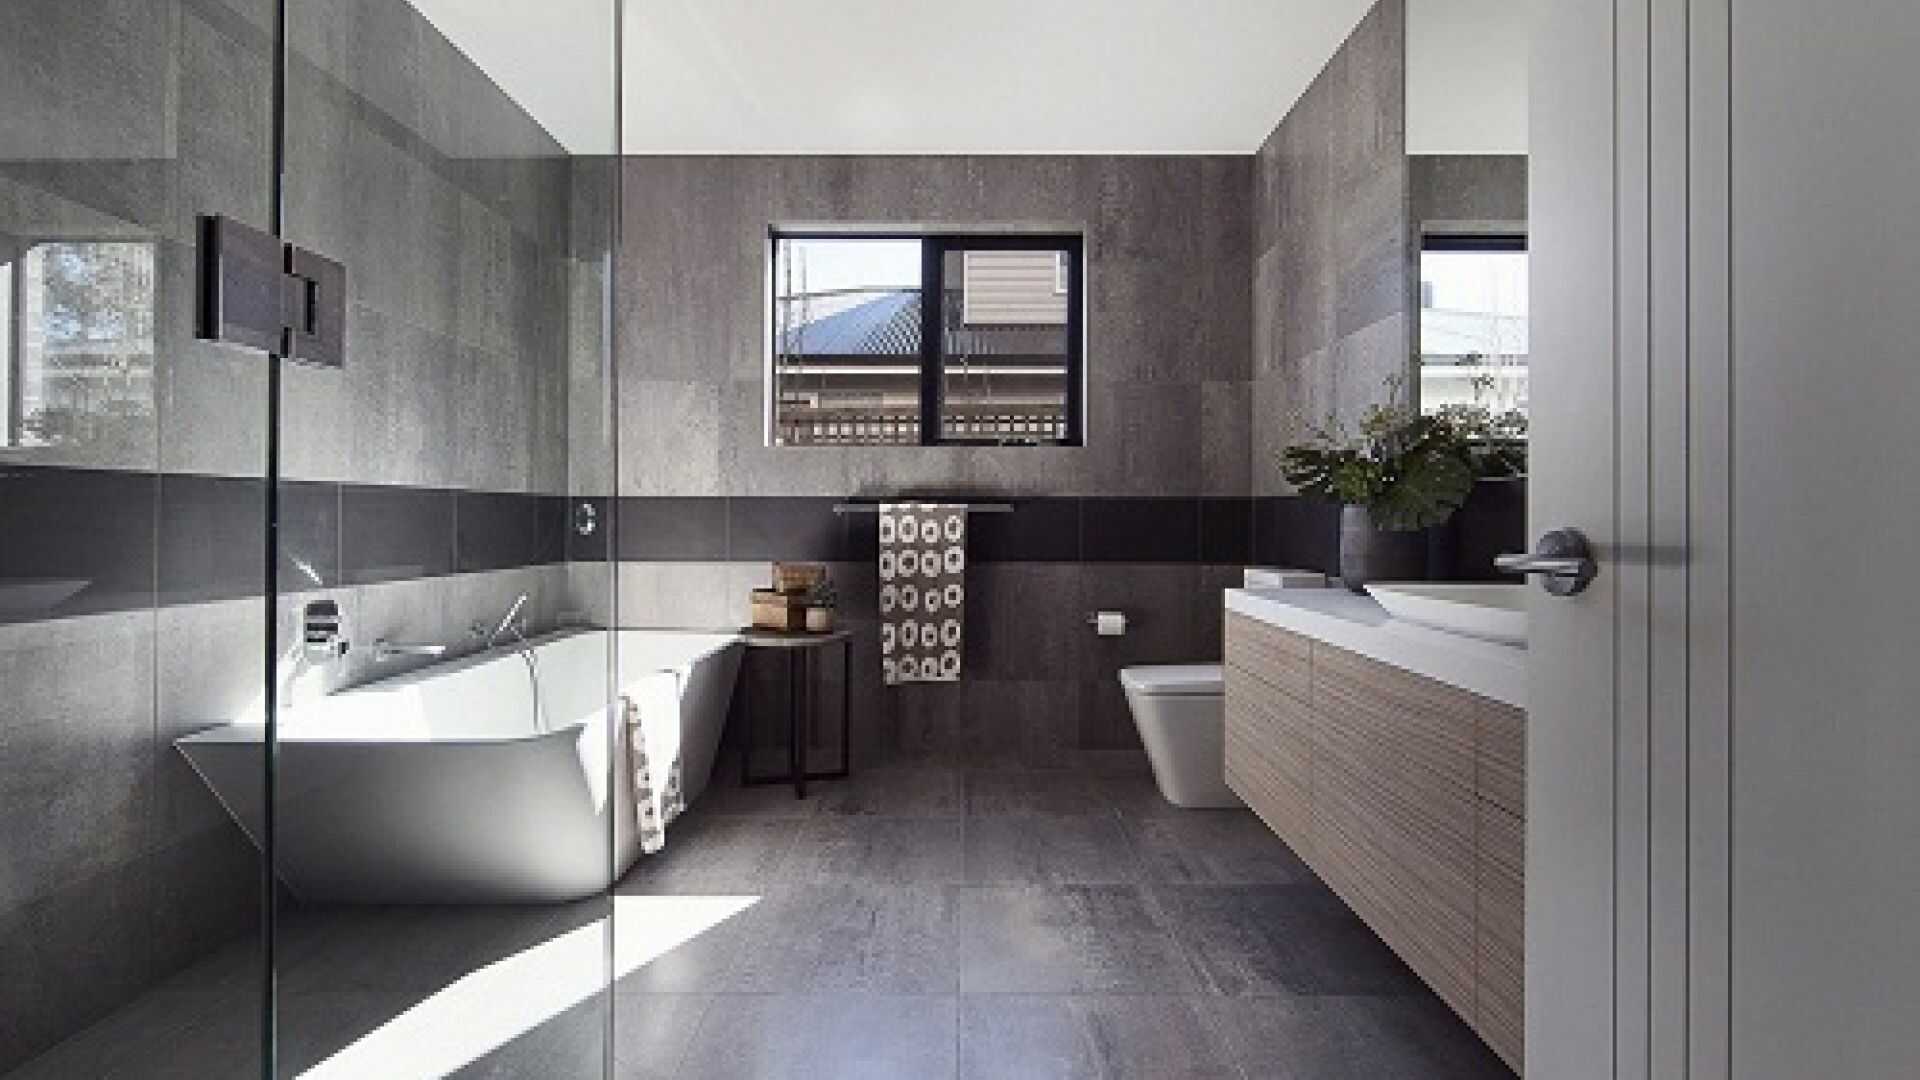 Thiết kế phòng tắm 6m2 dành cho biệt thự theo phong cách hiện đại